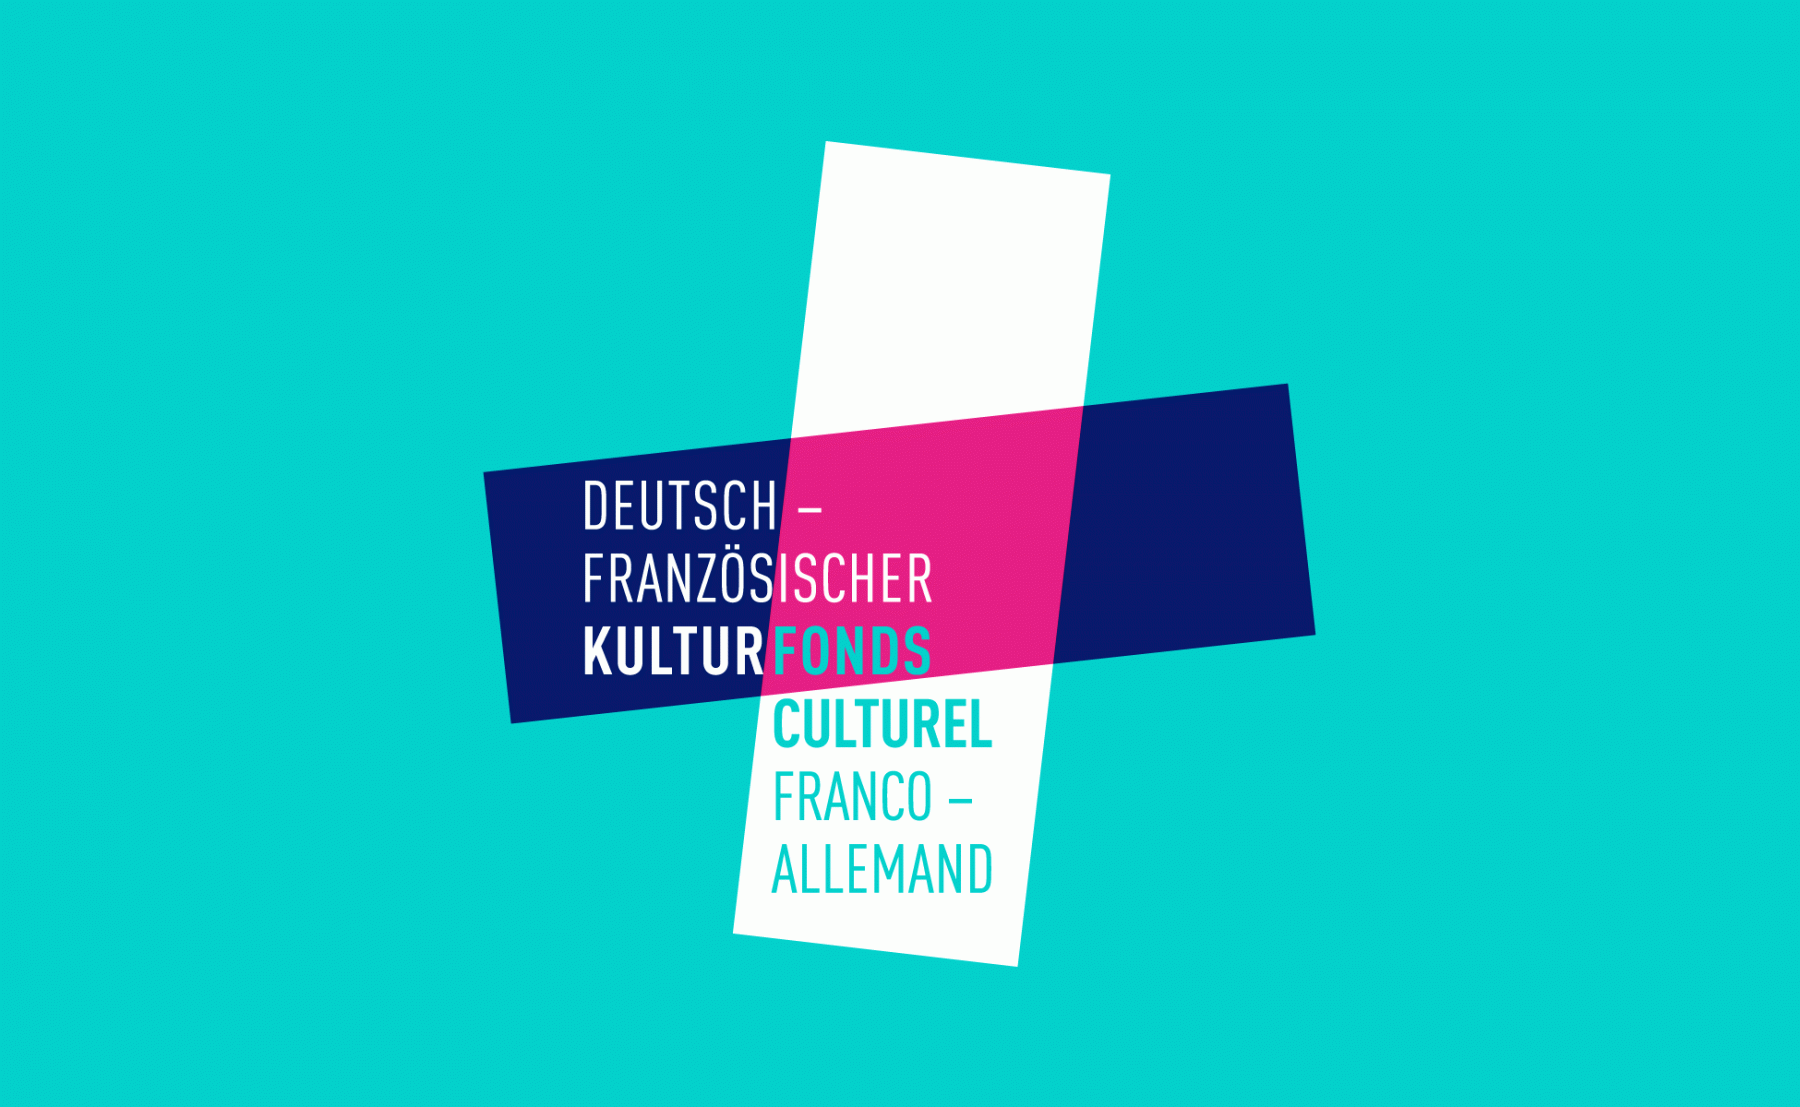 fond-culturel-franco-allemand-logo-design-turquoise